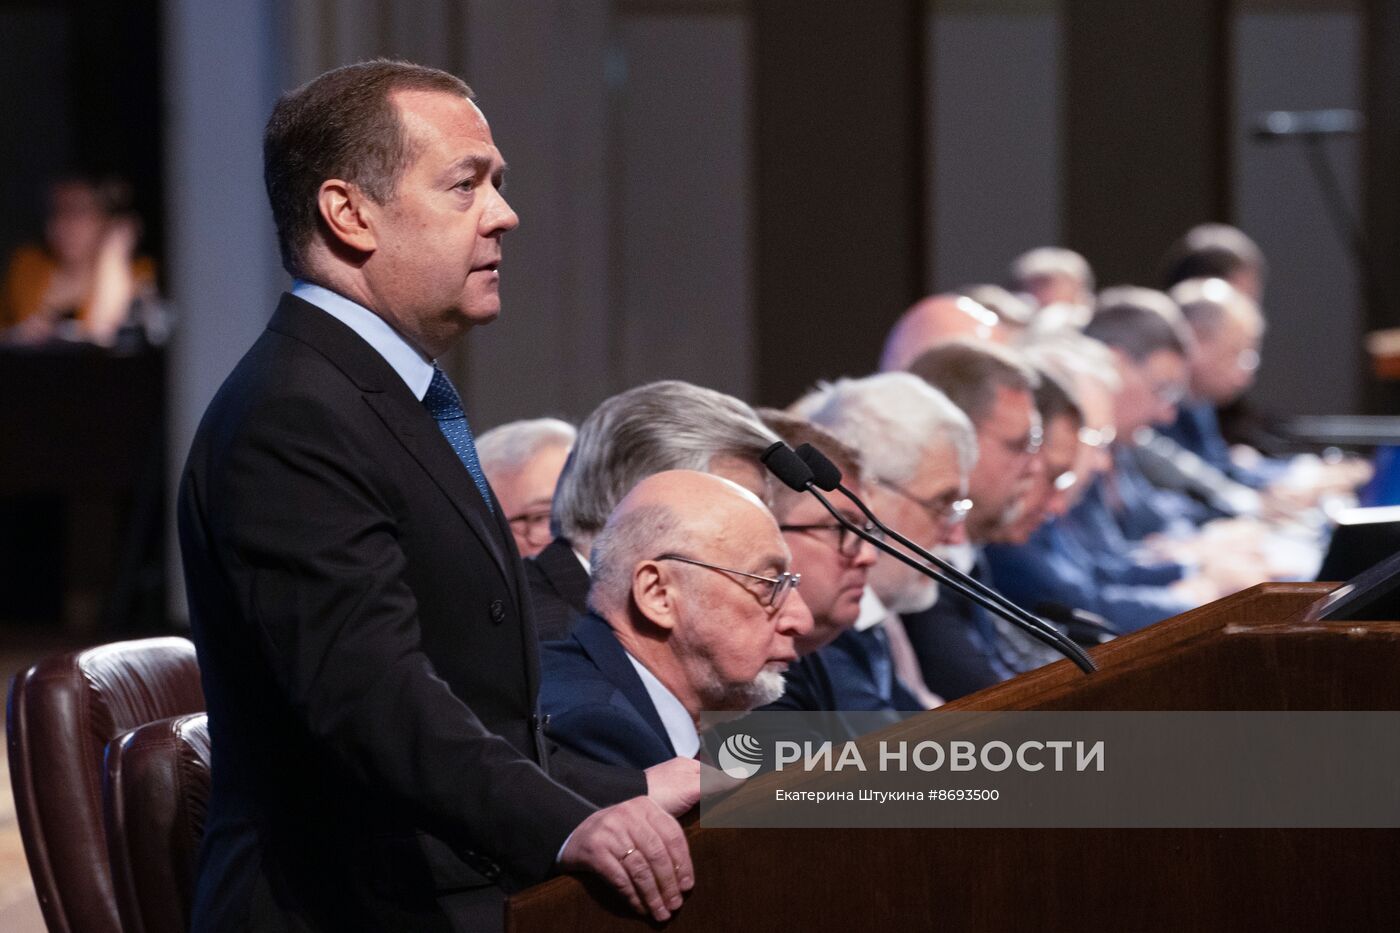 Зампред Совбеза Дмитрий Медведев выступил на общем собрании членов РАН